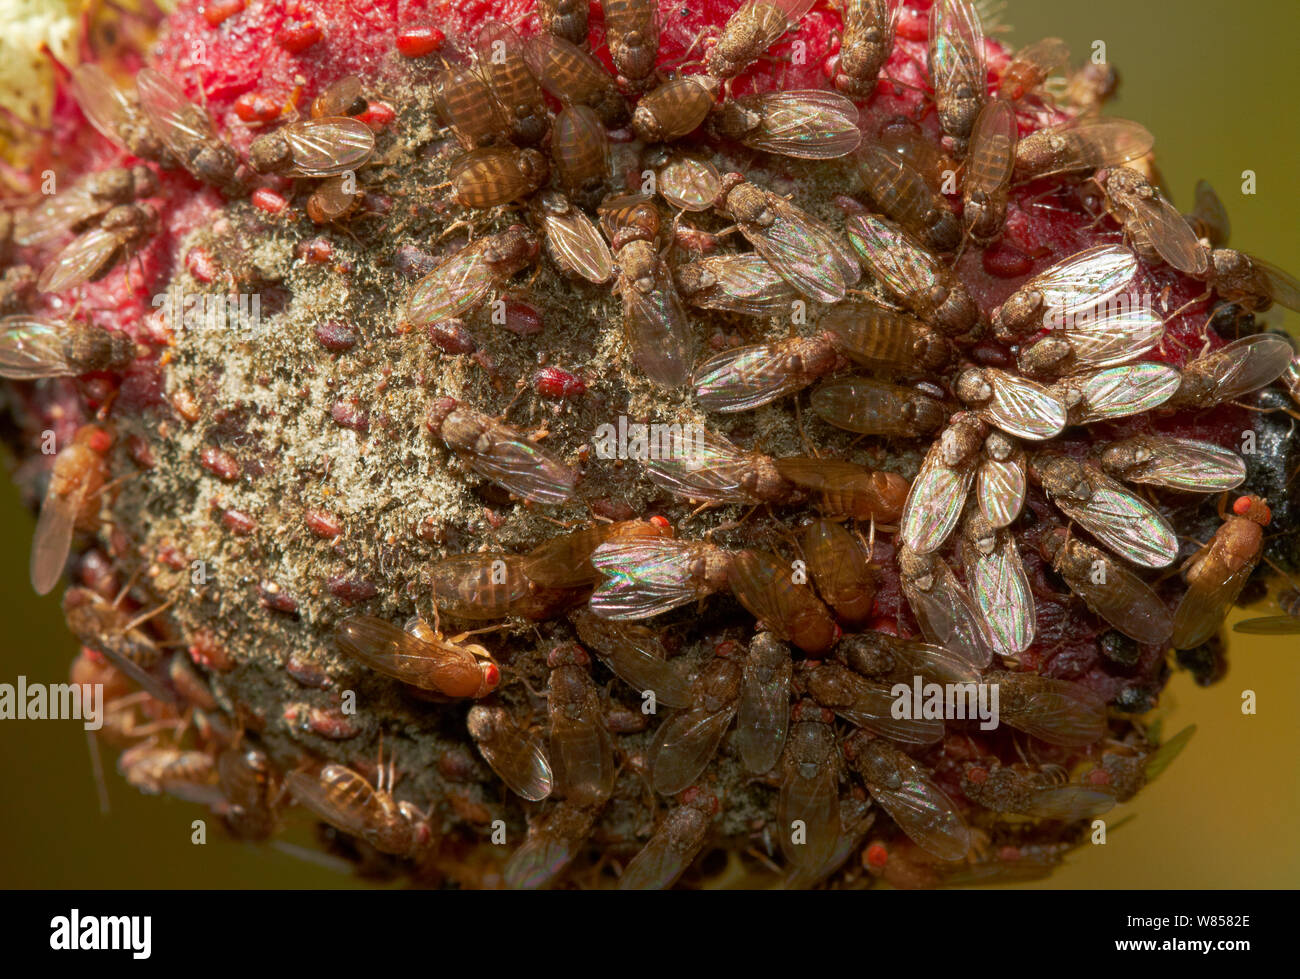 Les mouches à fruits (Drosophila melanogaster) sur la fraise en décomposition, England, UK, Août Banque D'Images